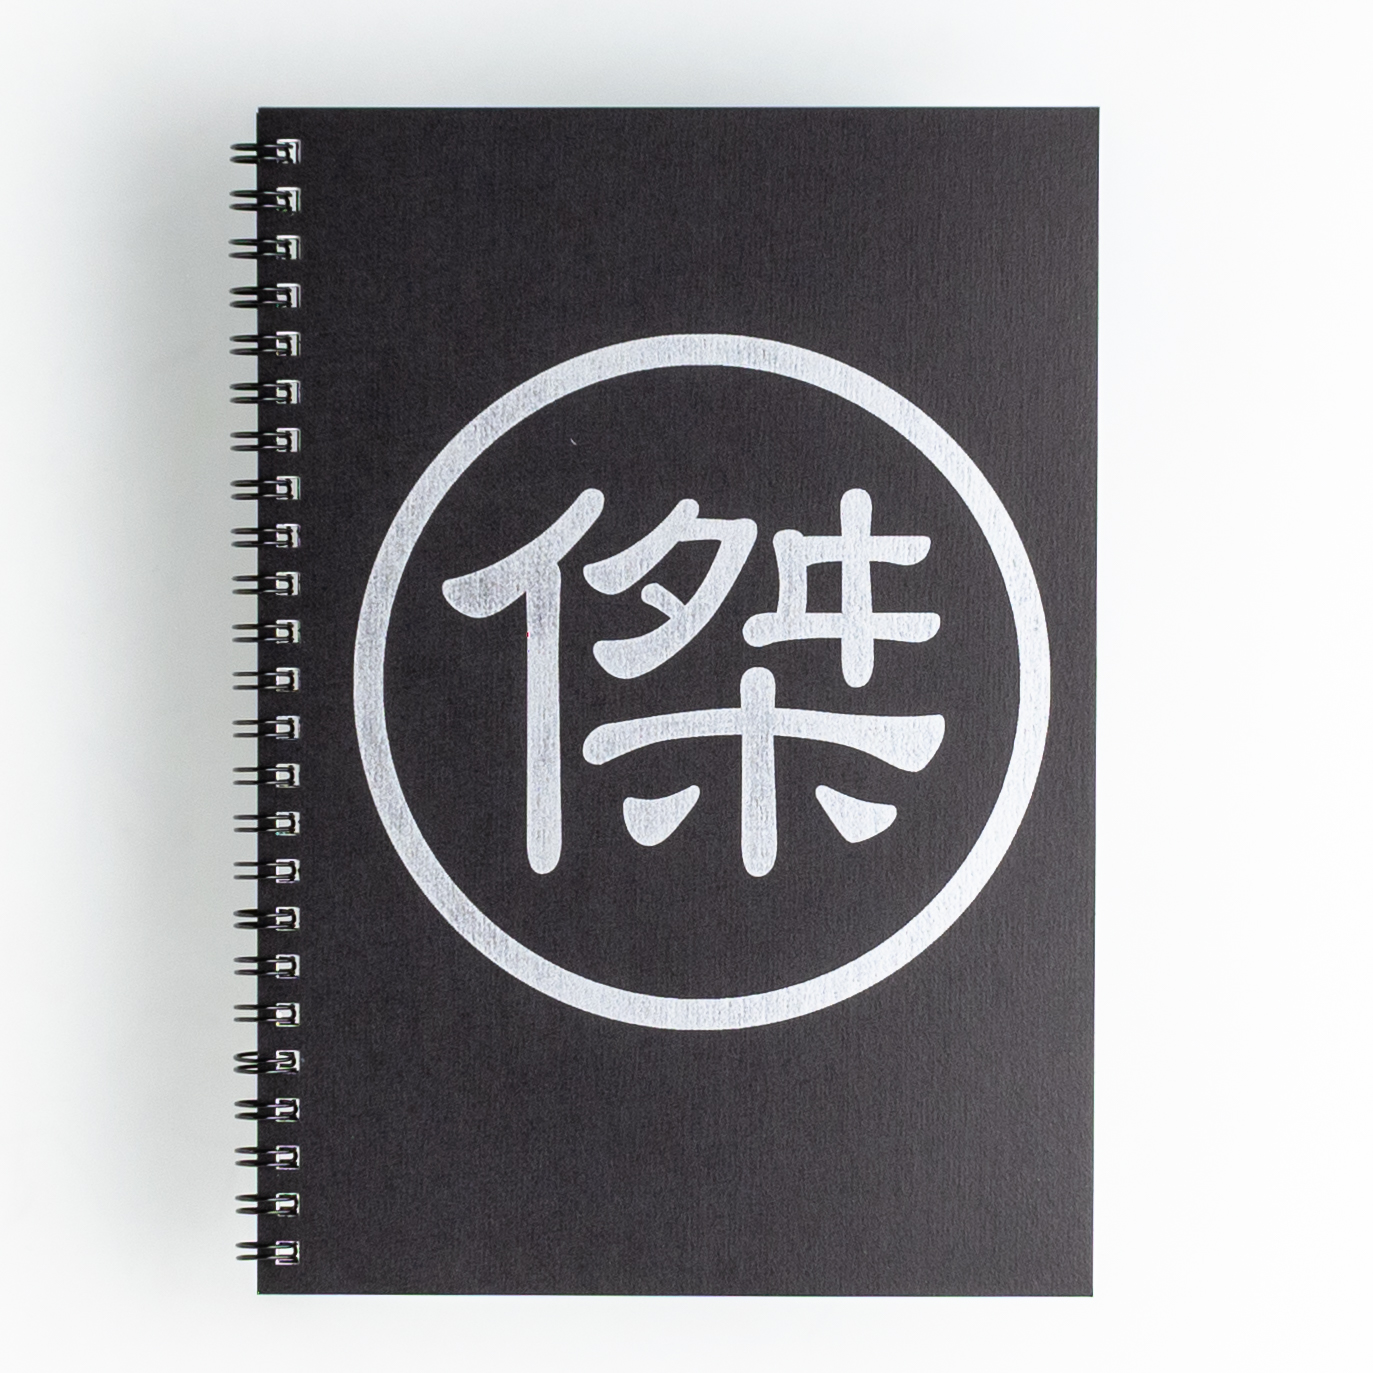 「傑岑寺 様」製作のオリジナルノート